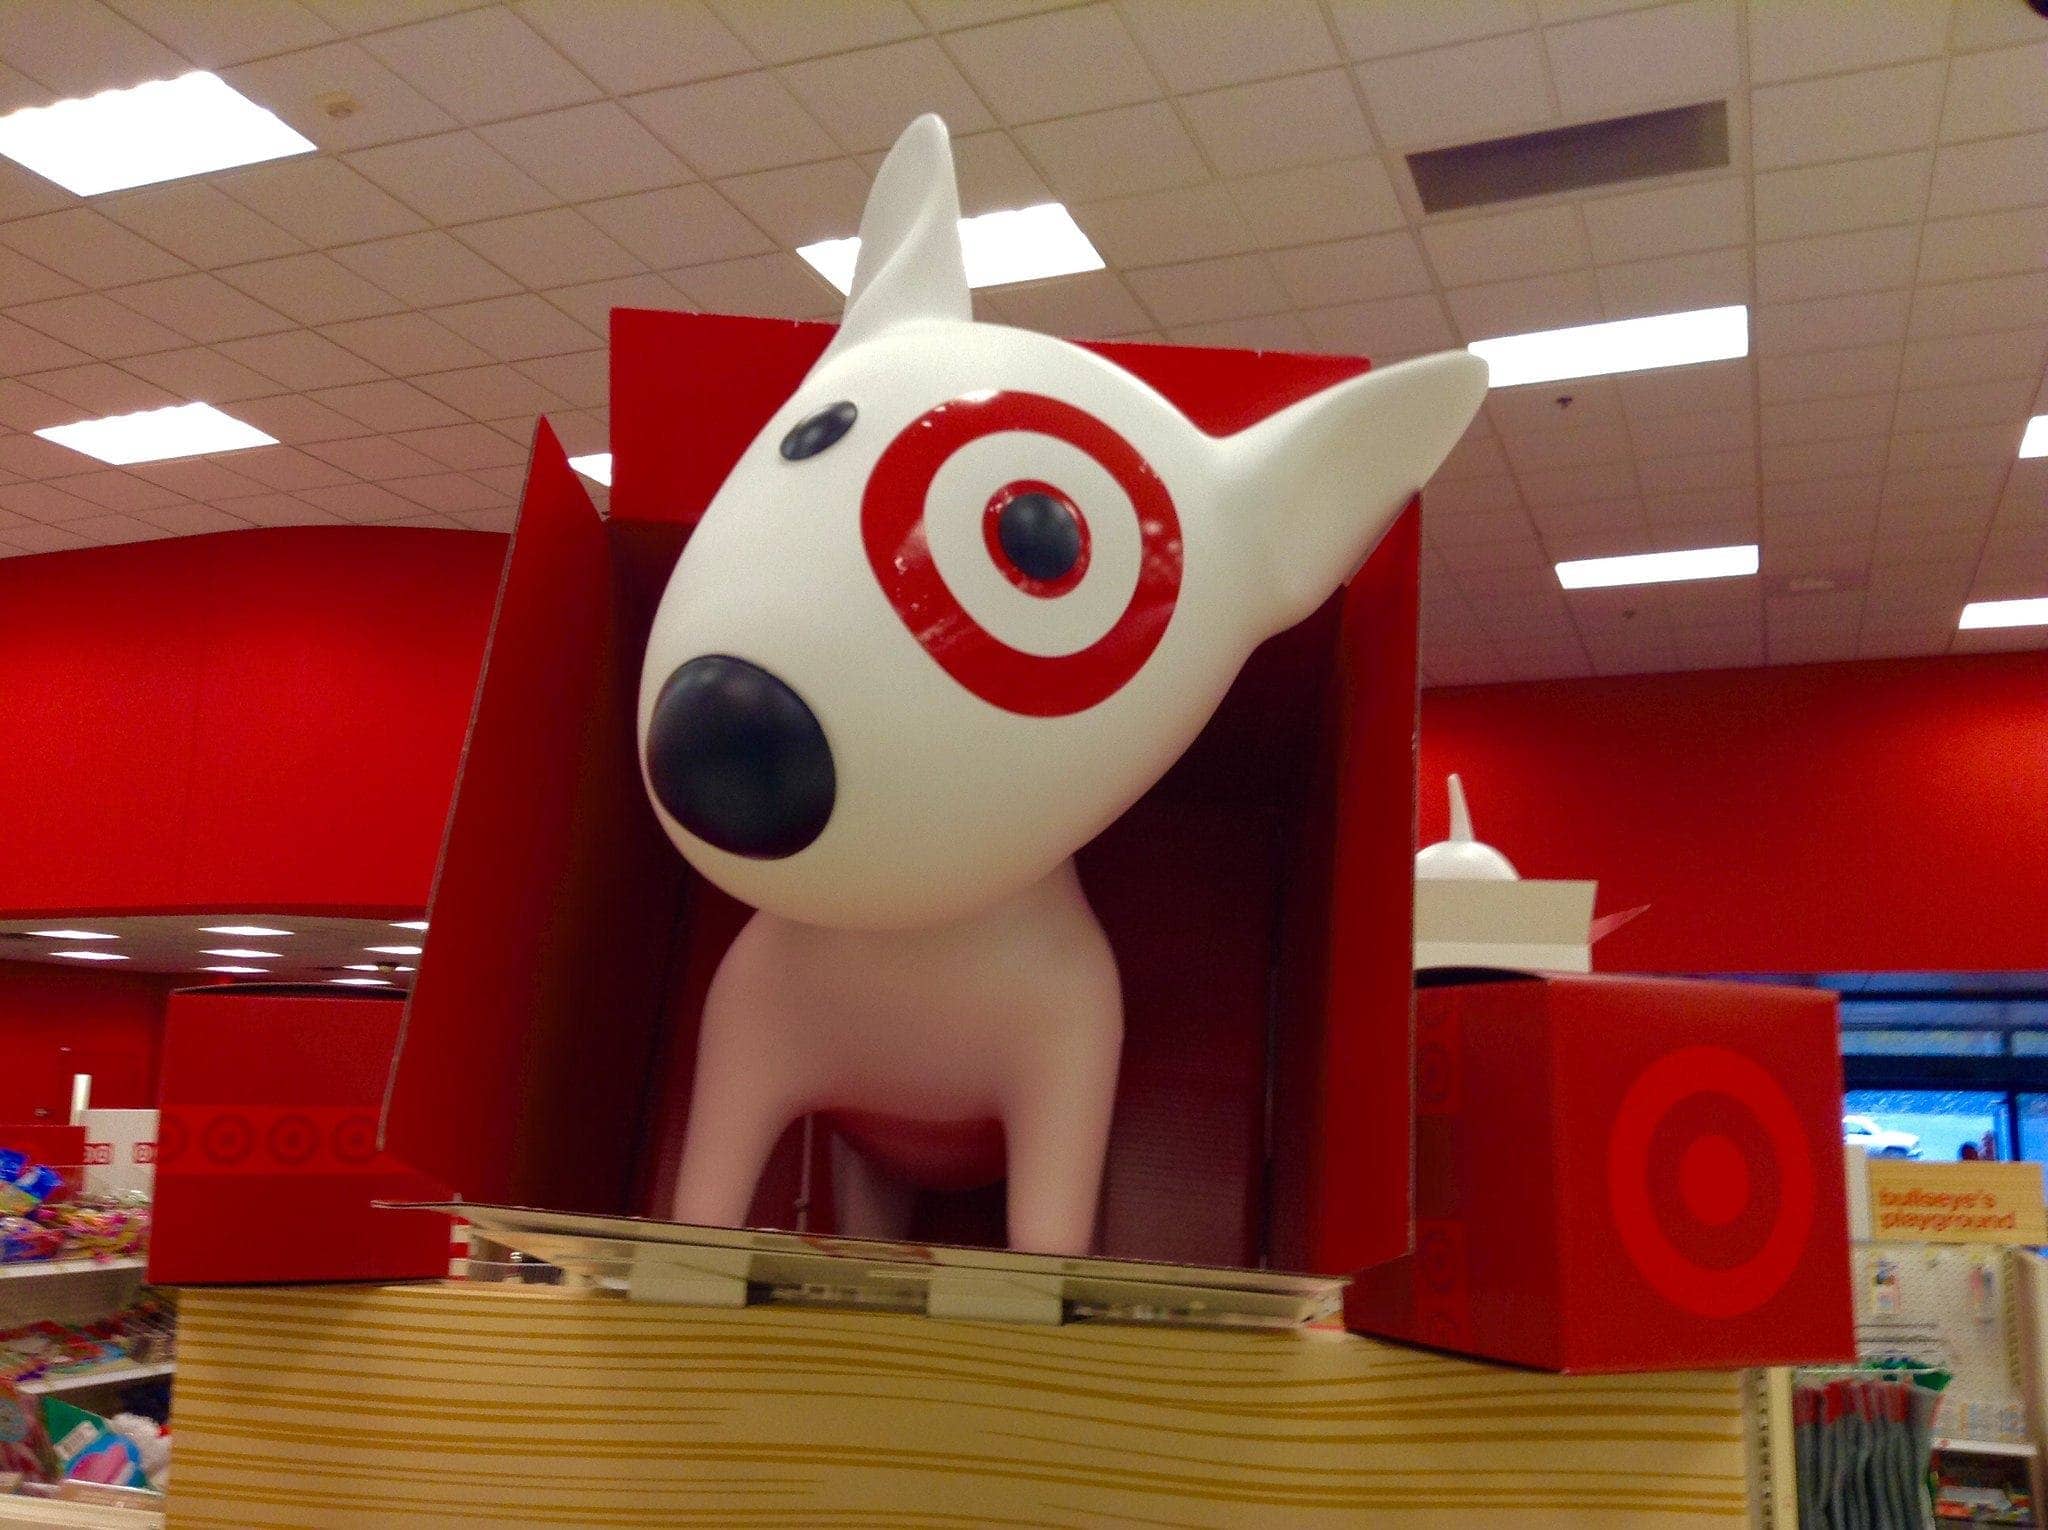 Target dog display